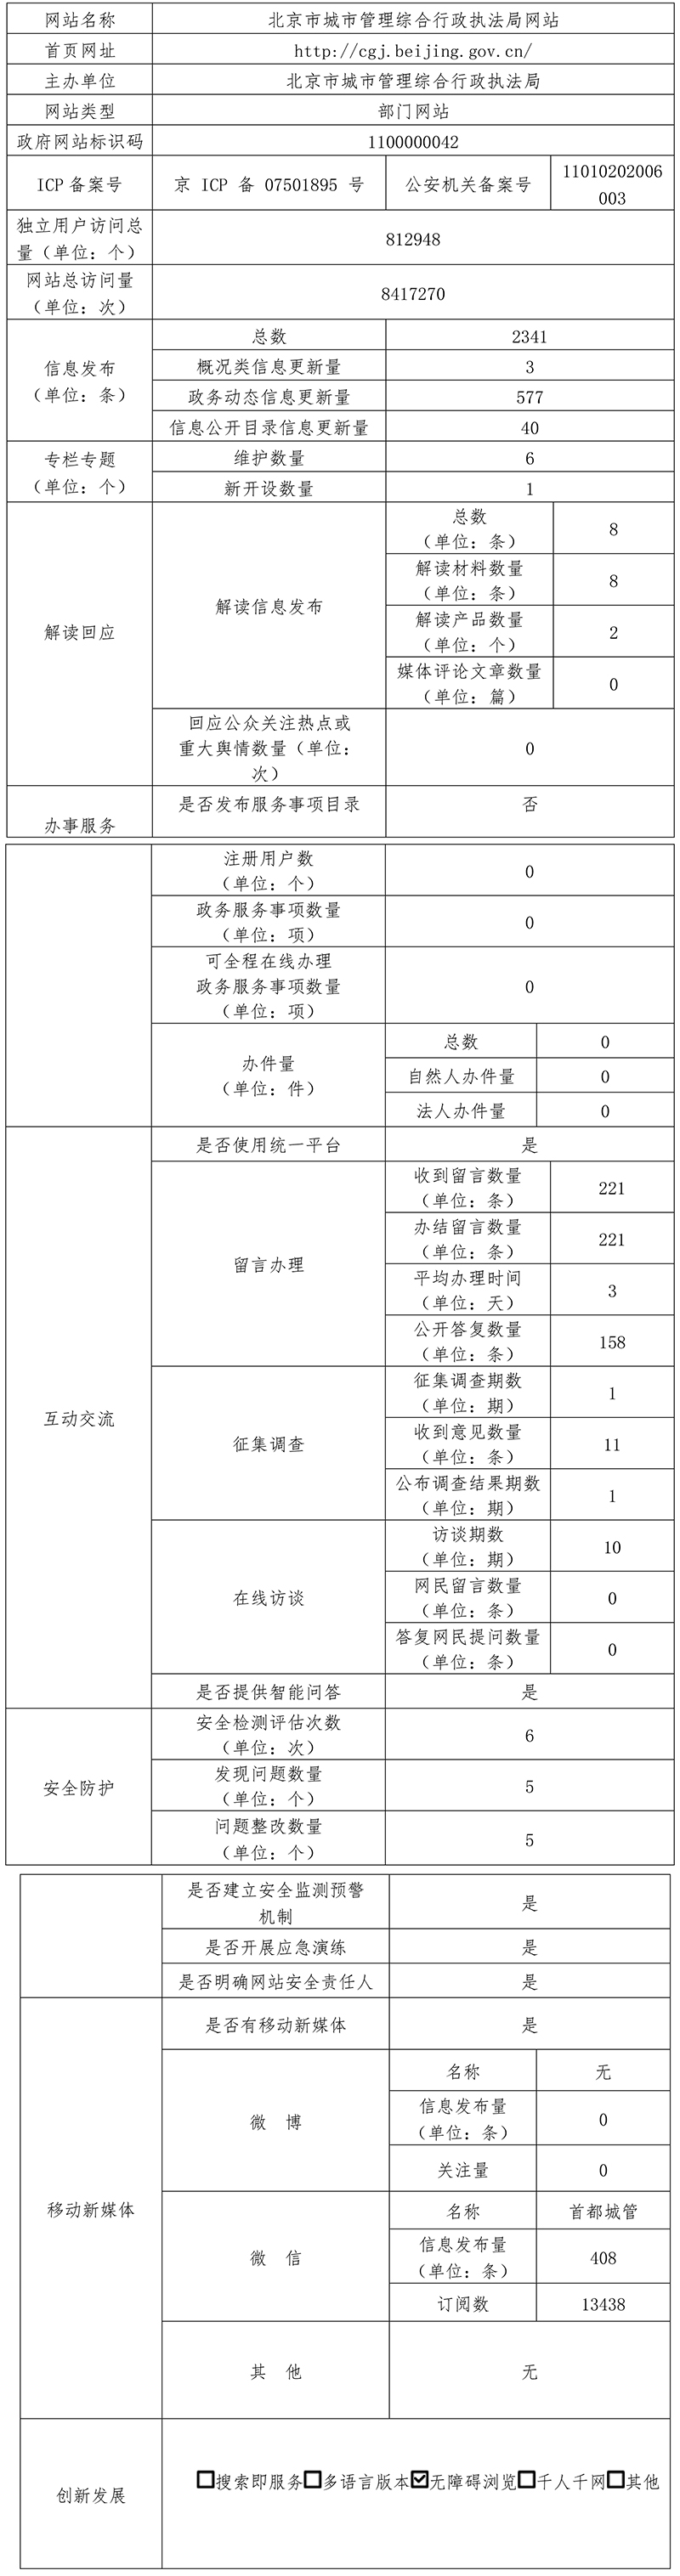 北京市城市管理综合行政执法局2021年政府网站年度工作报表